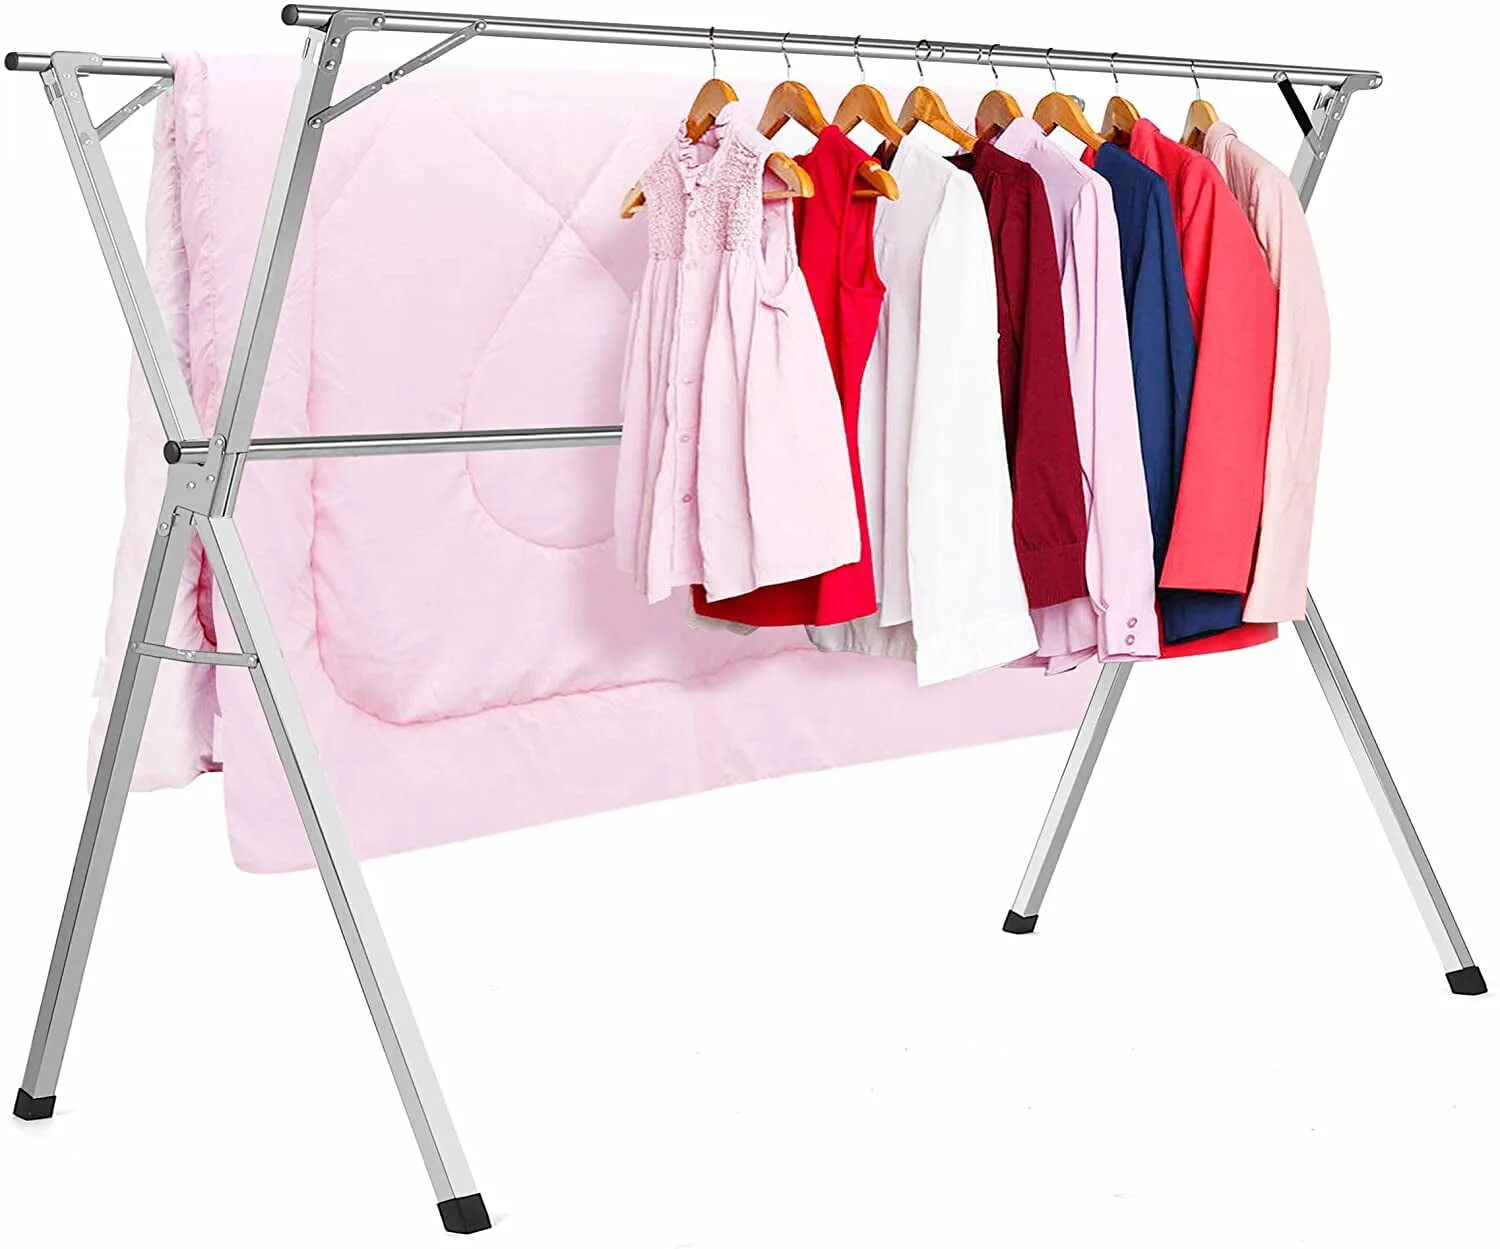 Drying Rack сушильная стойка hp09-760h. Стойка для сушки одежды складная. Сушилка Прачечная одежда. Drying Rack for clothes.